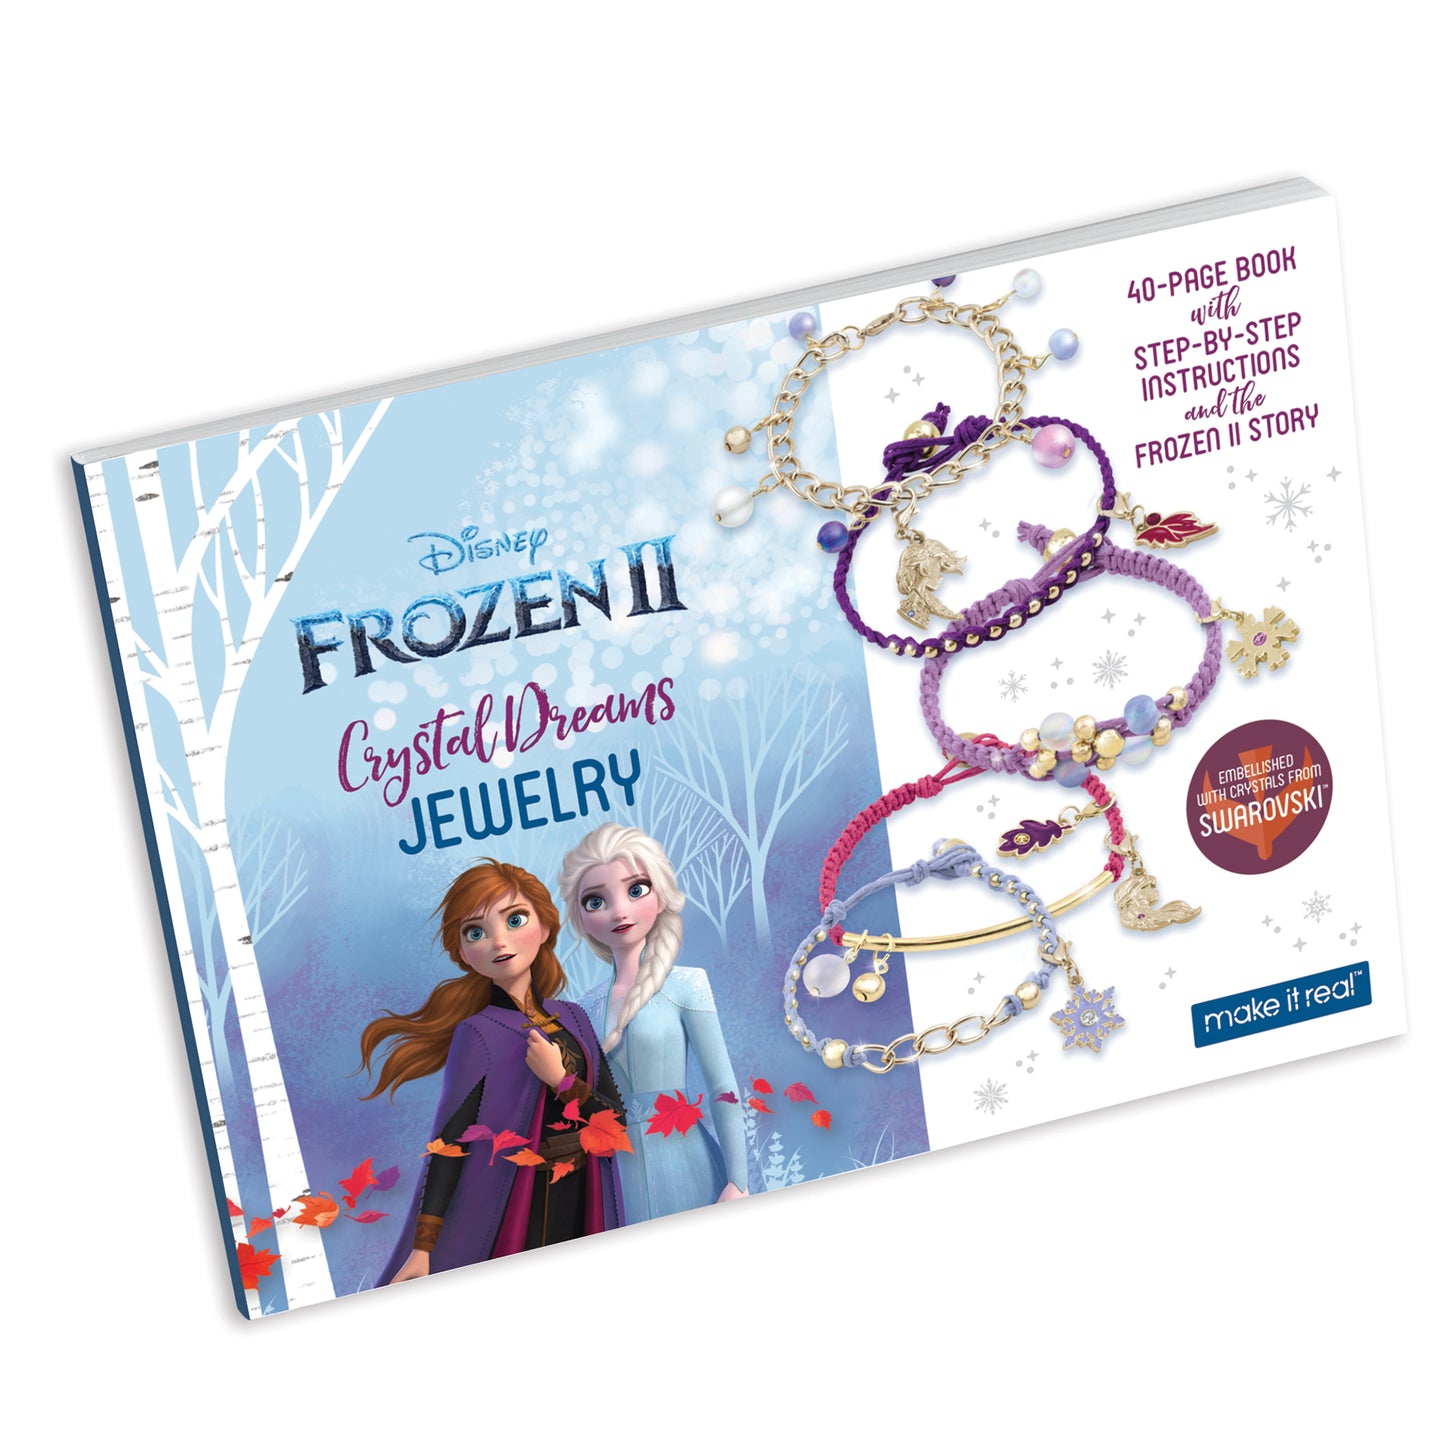 Disney Frozen 2 Crystal Dreams Jewelry